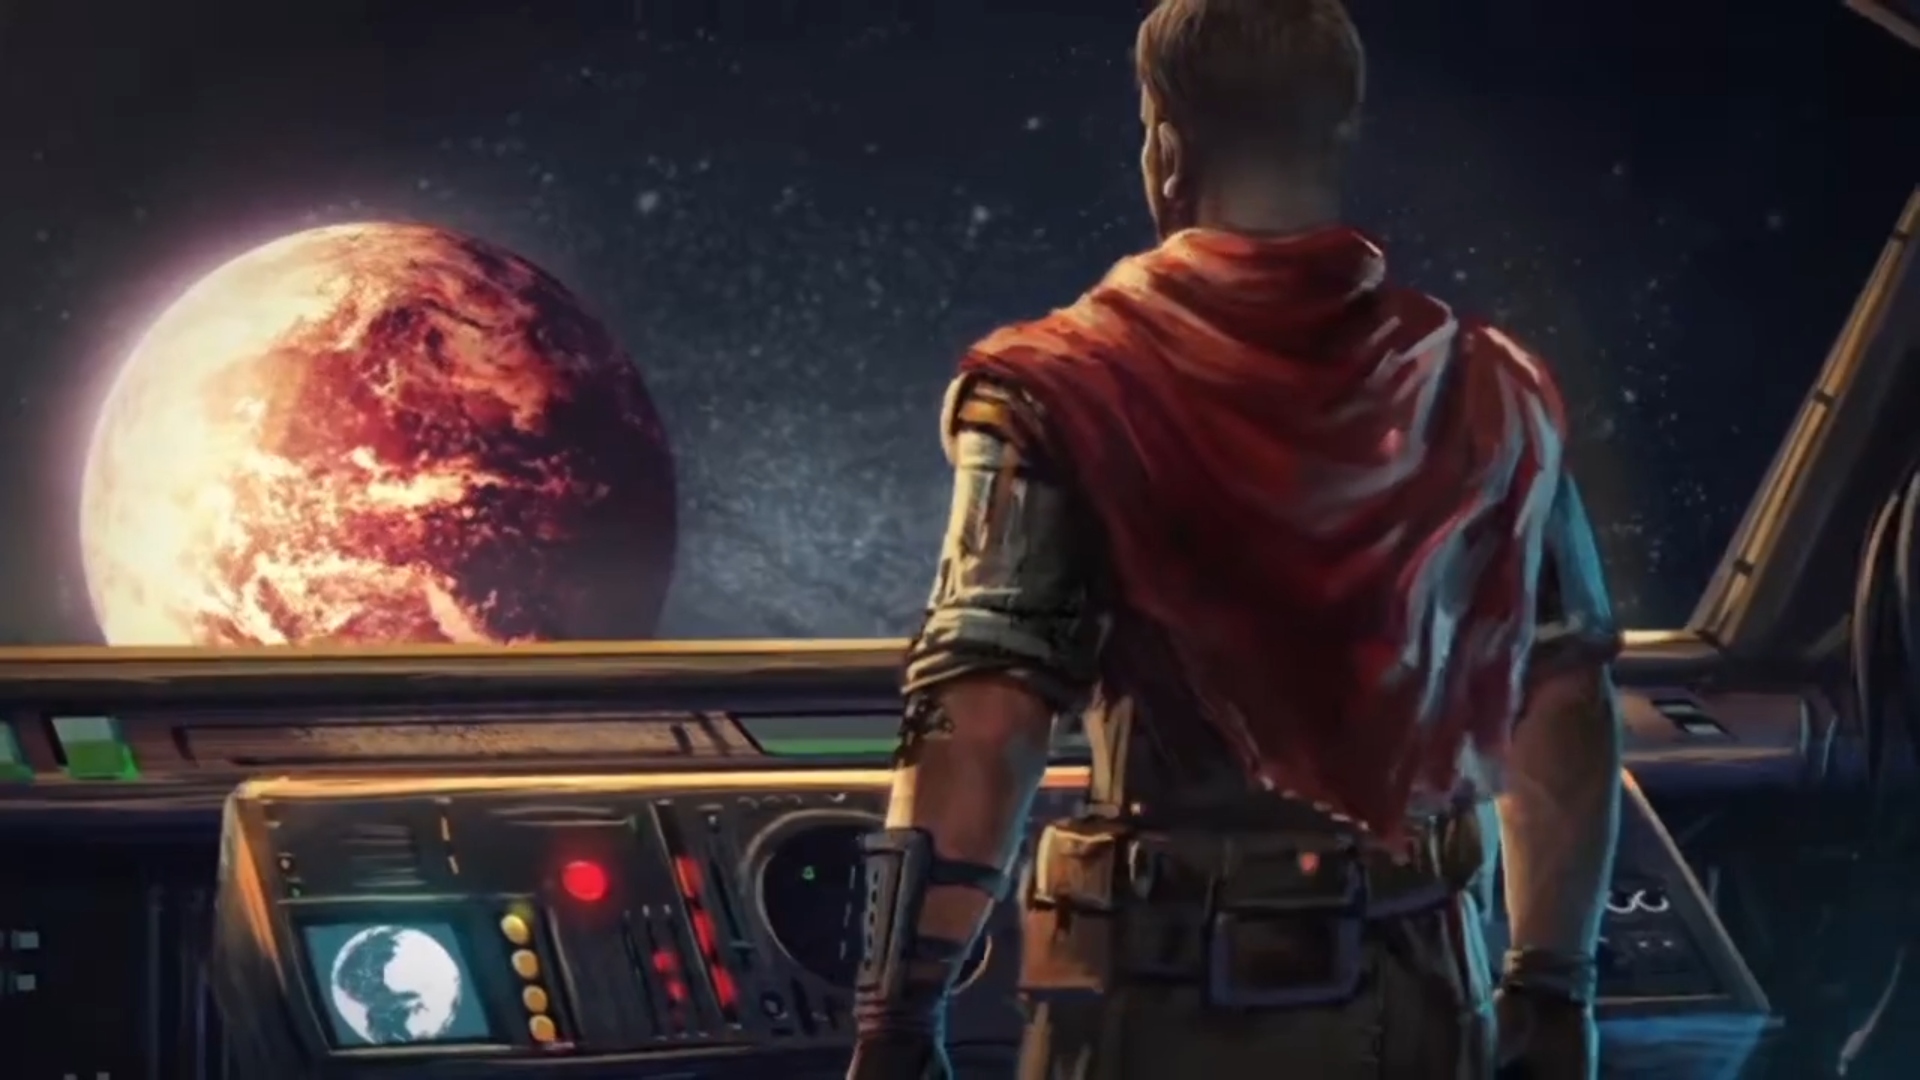 Los mejores juegos de navegador: Survivor Legacy. La imagen muestra a un hombre mirando un planeta desde el interior de una nave espacial